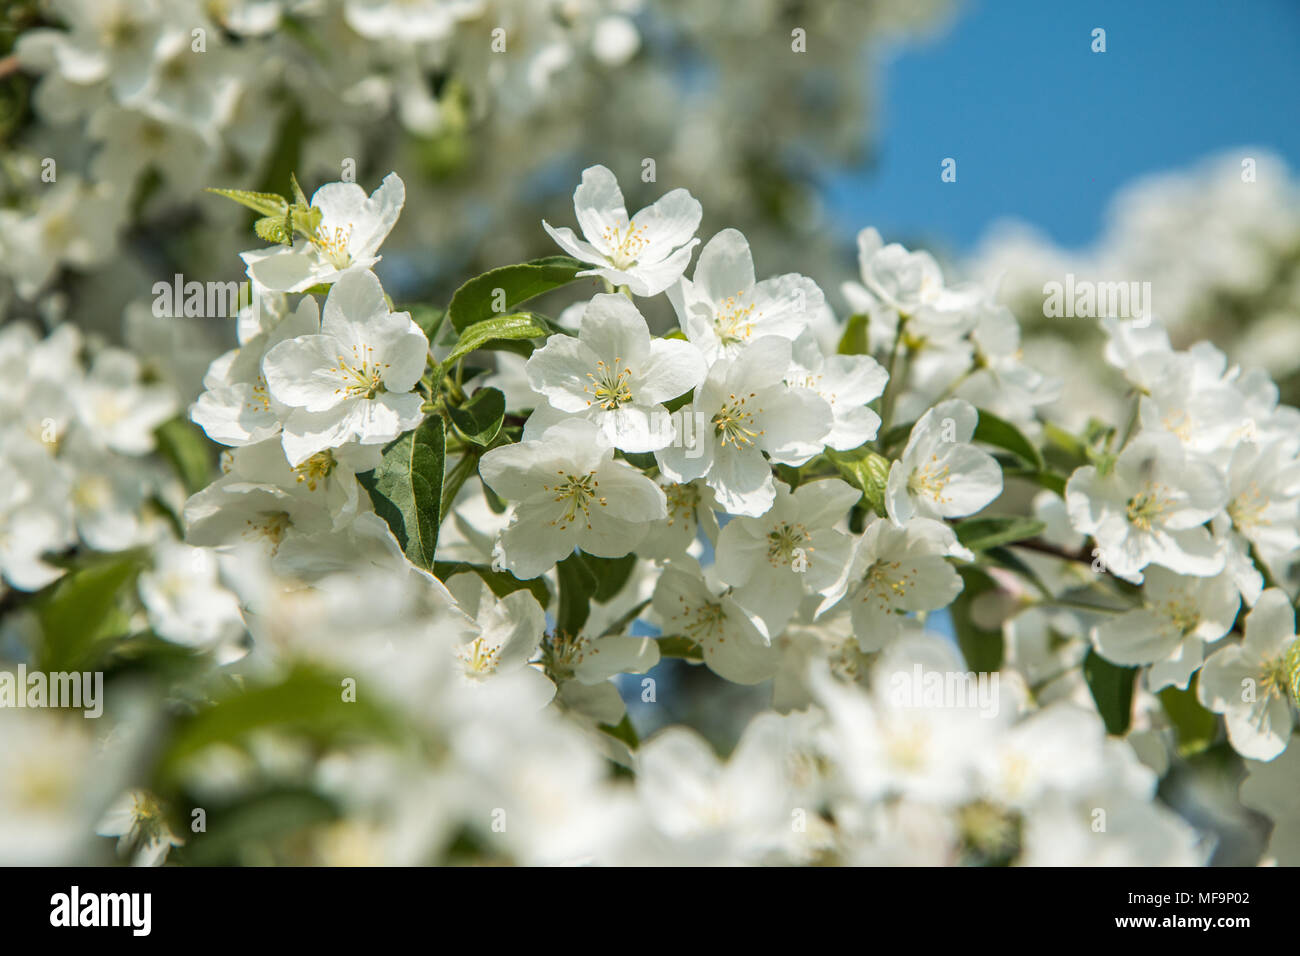 Détail d'une photo de fleurs d'arbre blanc de printemps frais. Le ressort est montrant sa magie Banque D'Images